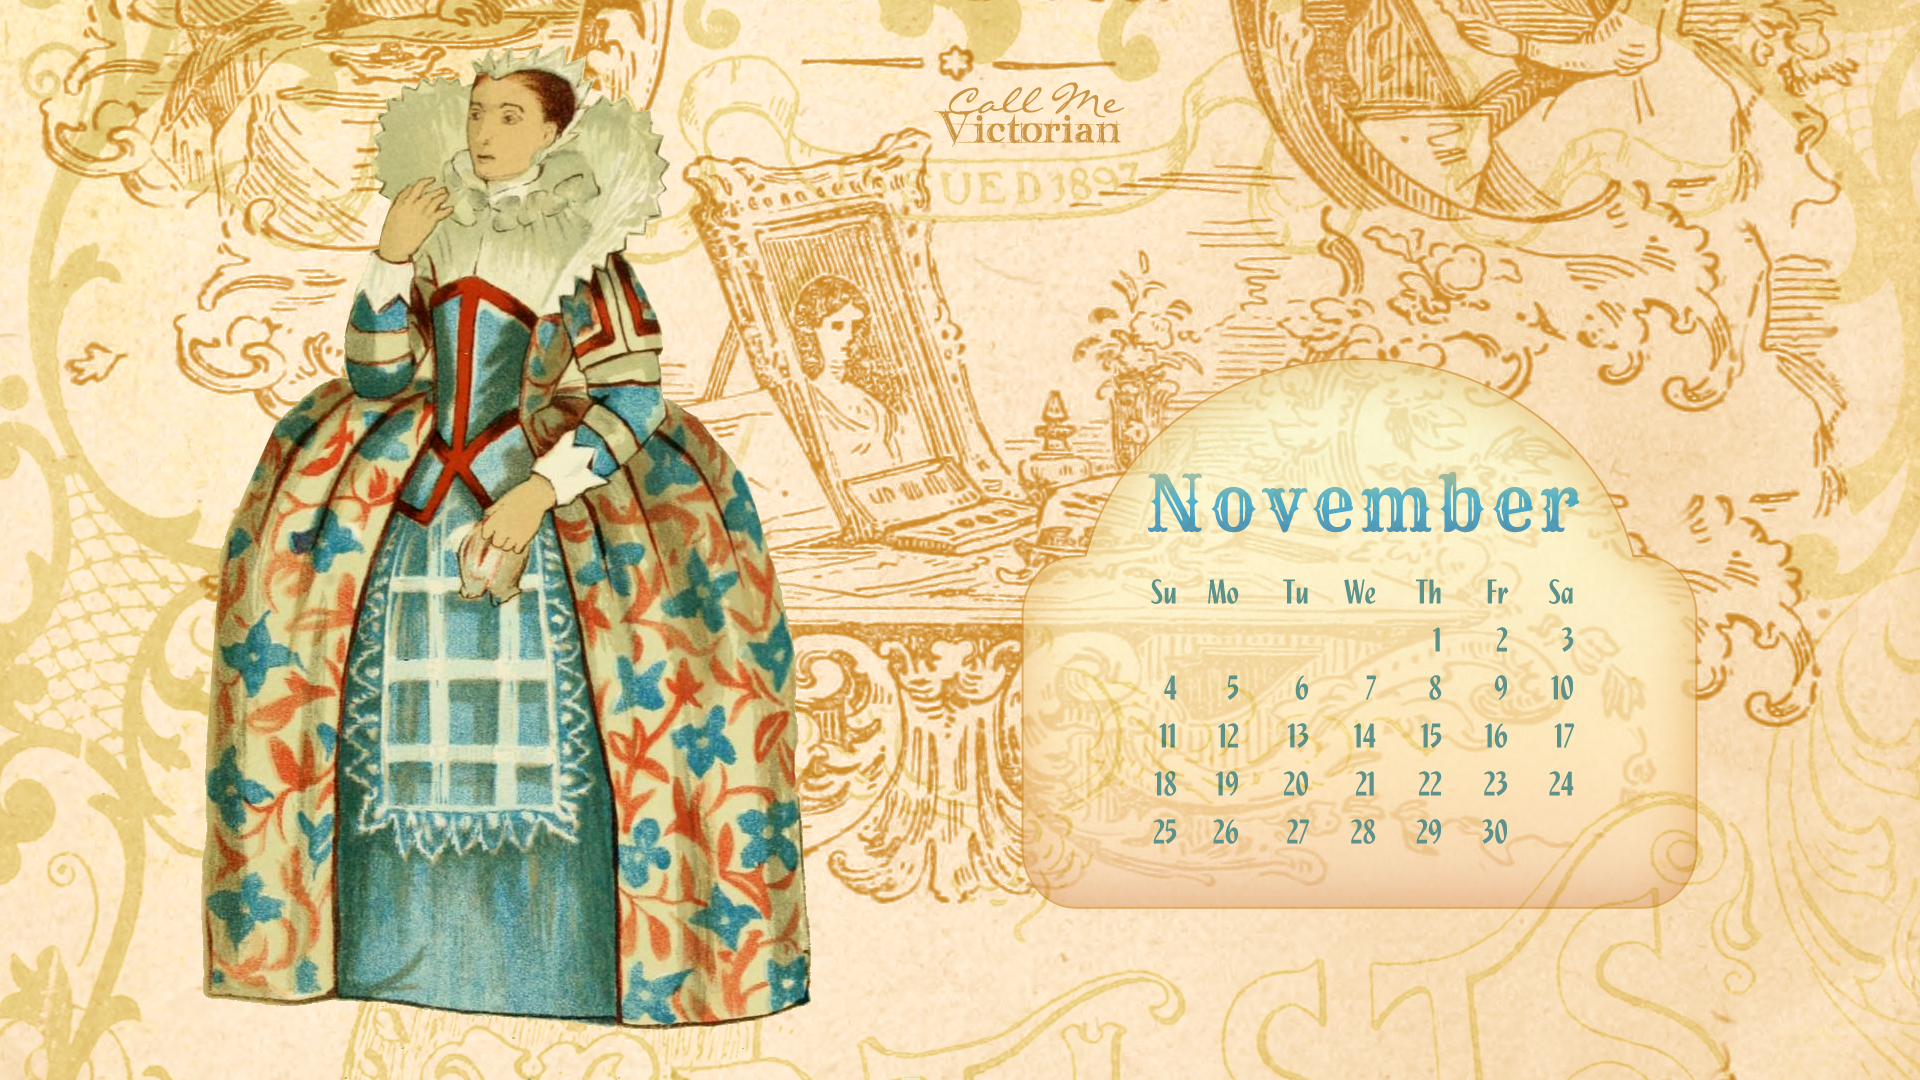 November 2012 Calendar Wallpaper - Victorian Computer Background - HD Wallpaper 